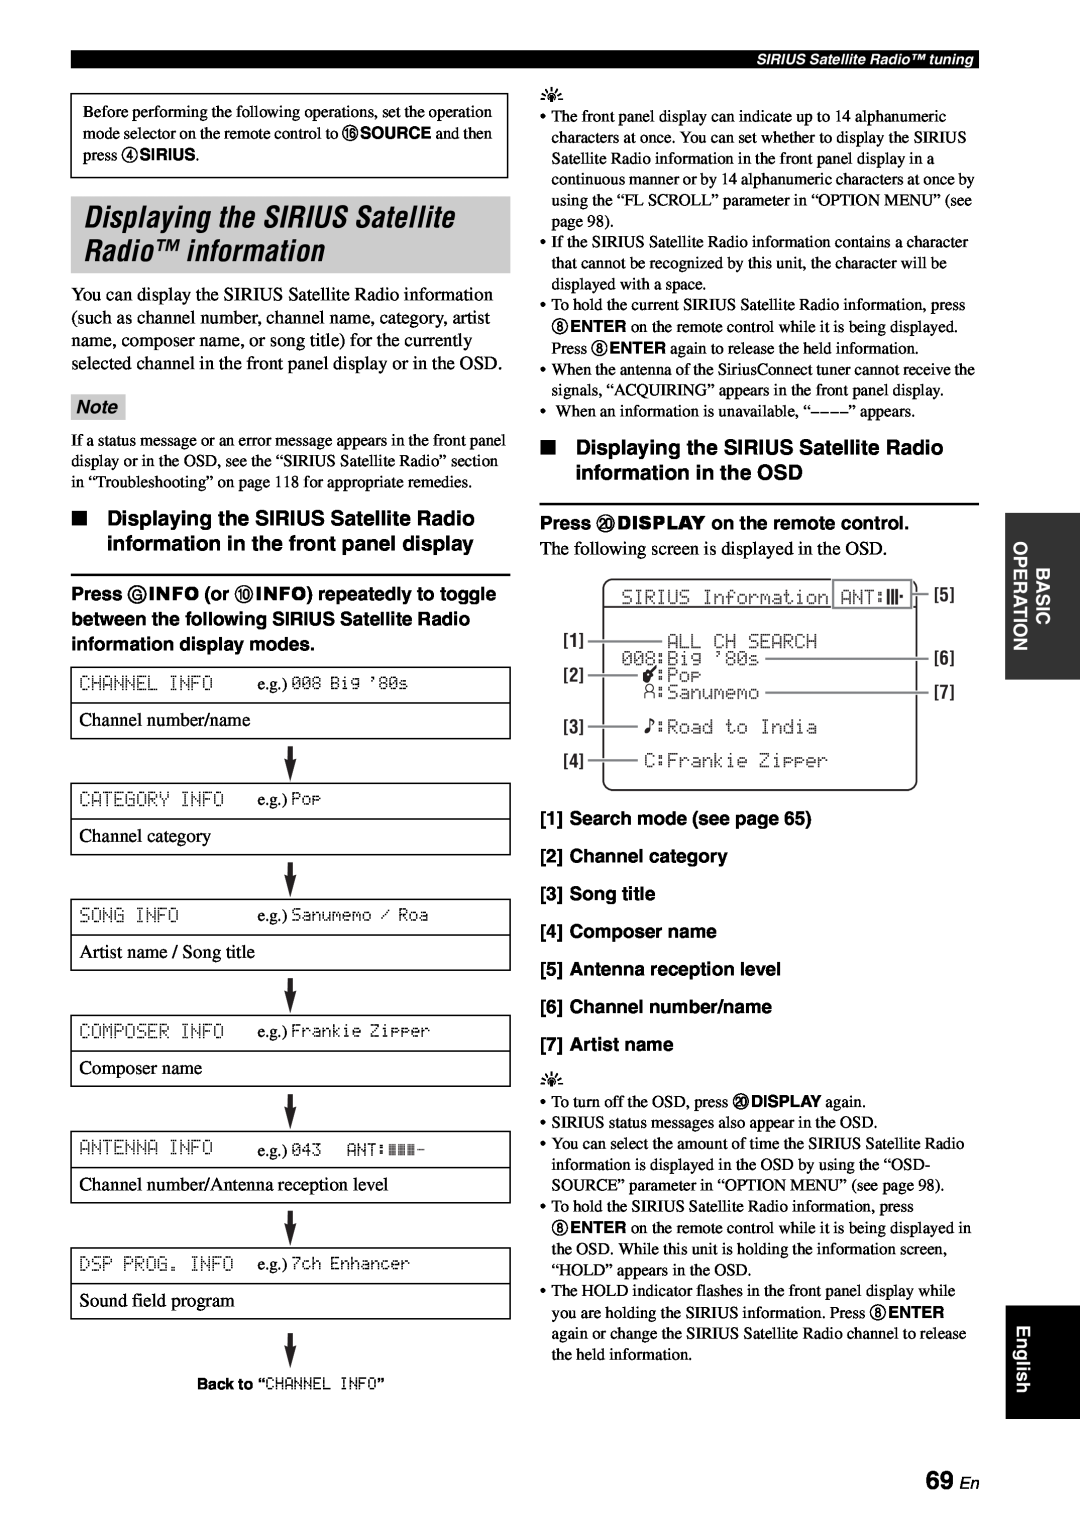 Yamaha RX-V863 owner manual Displaying the SIRIUS Satellite Radio information, 69 En 